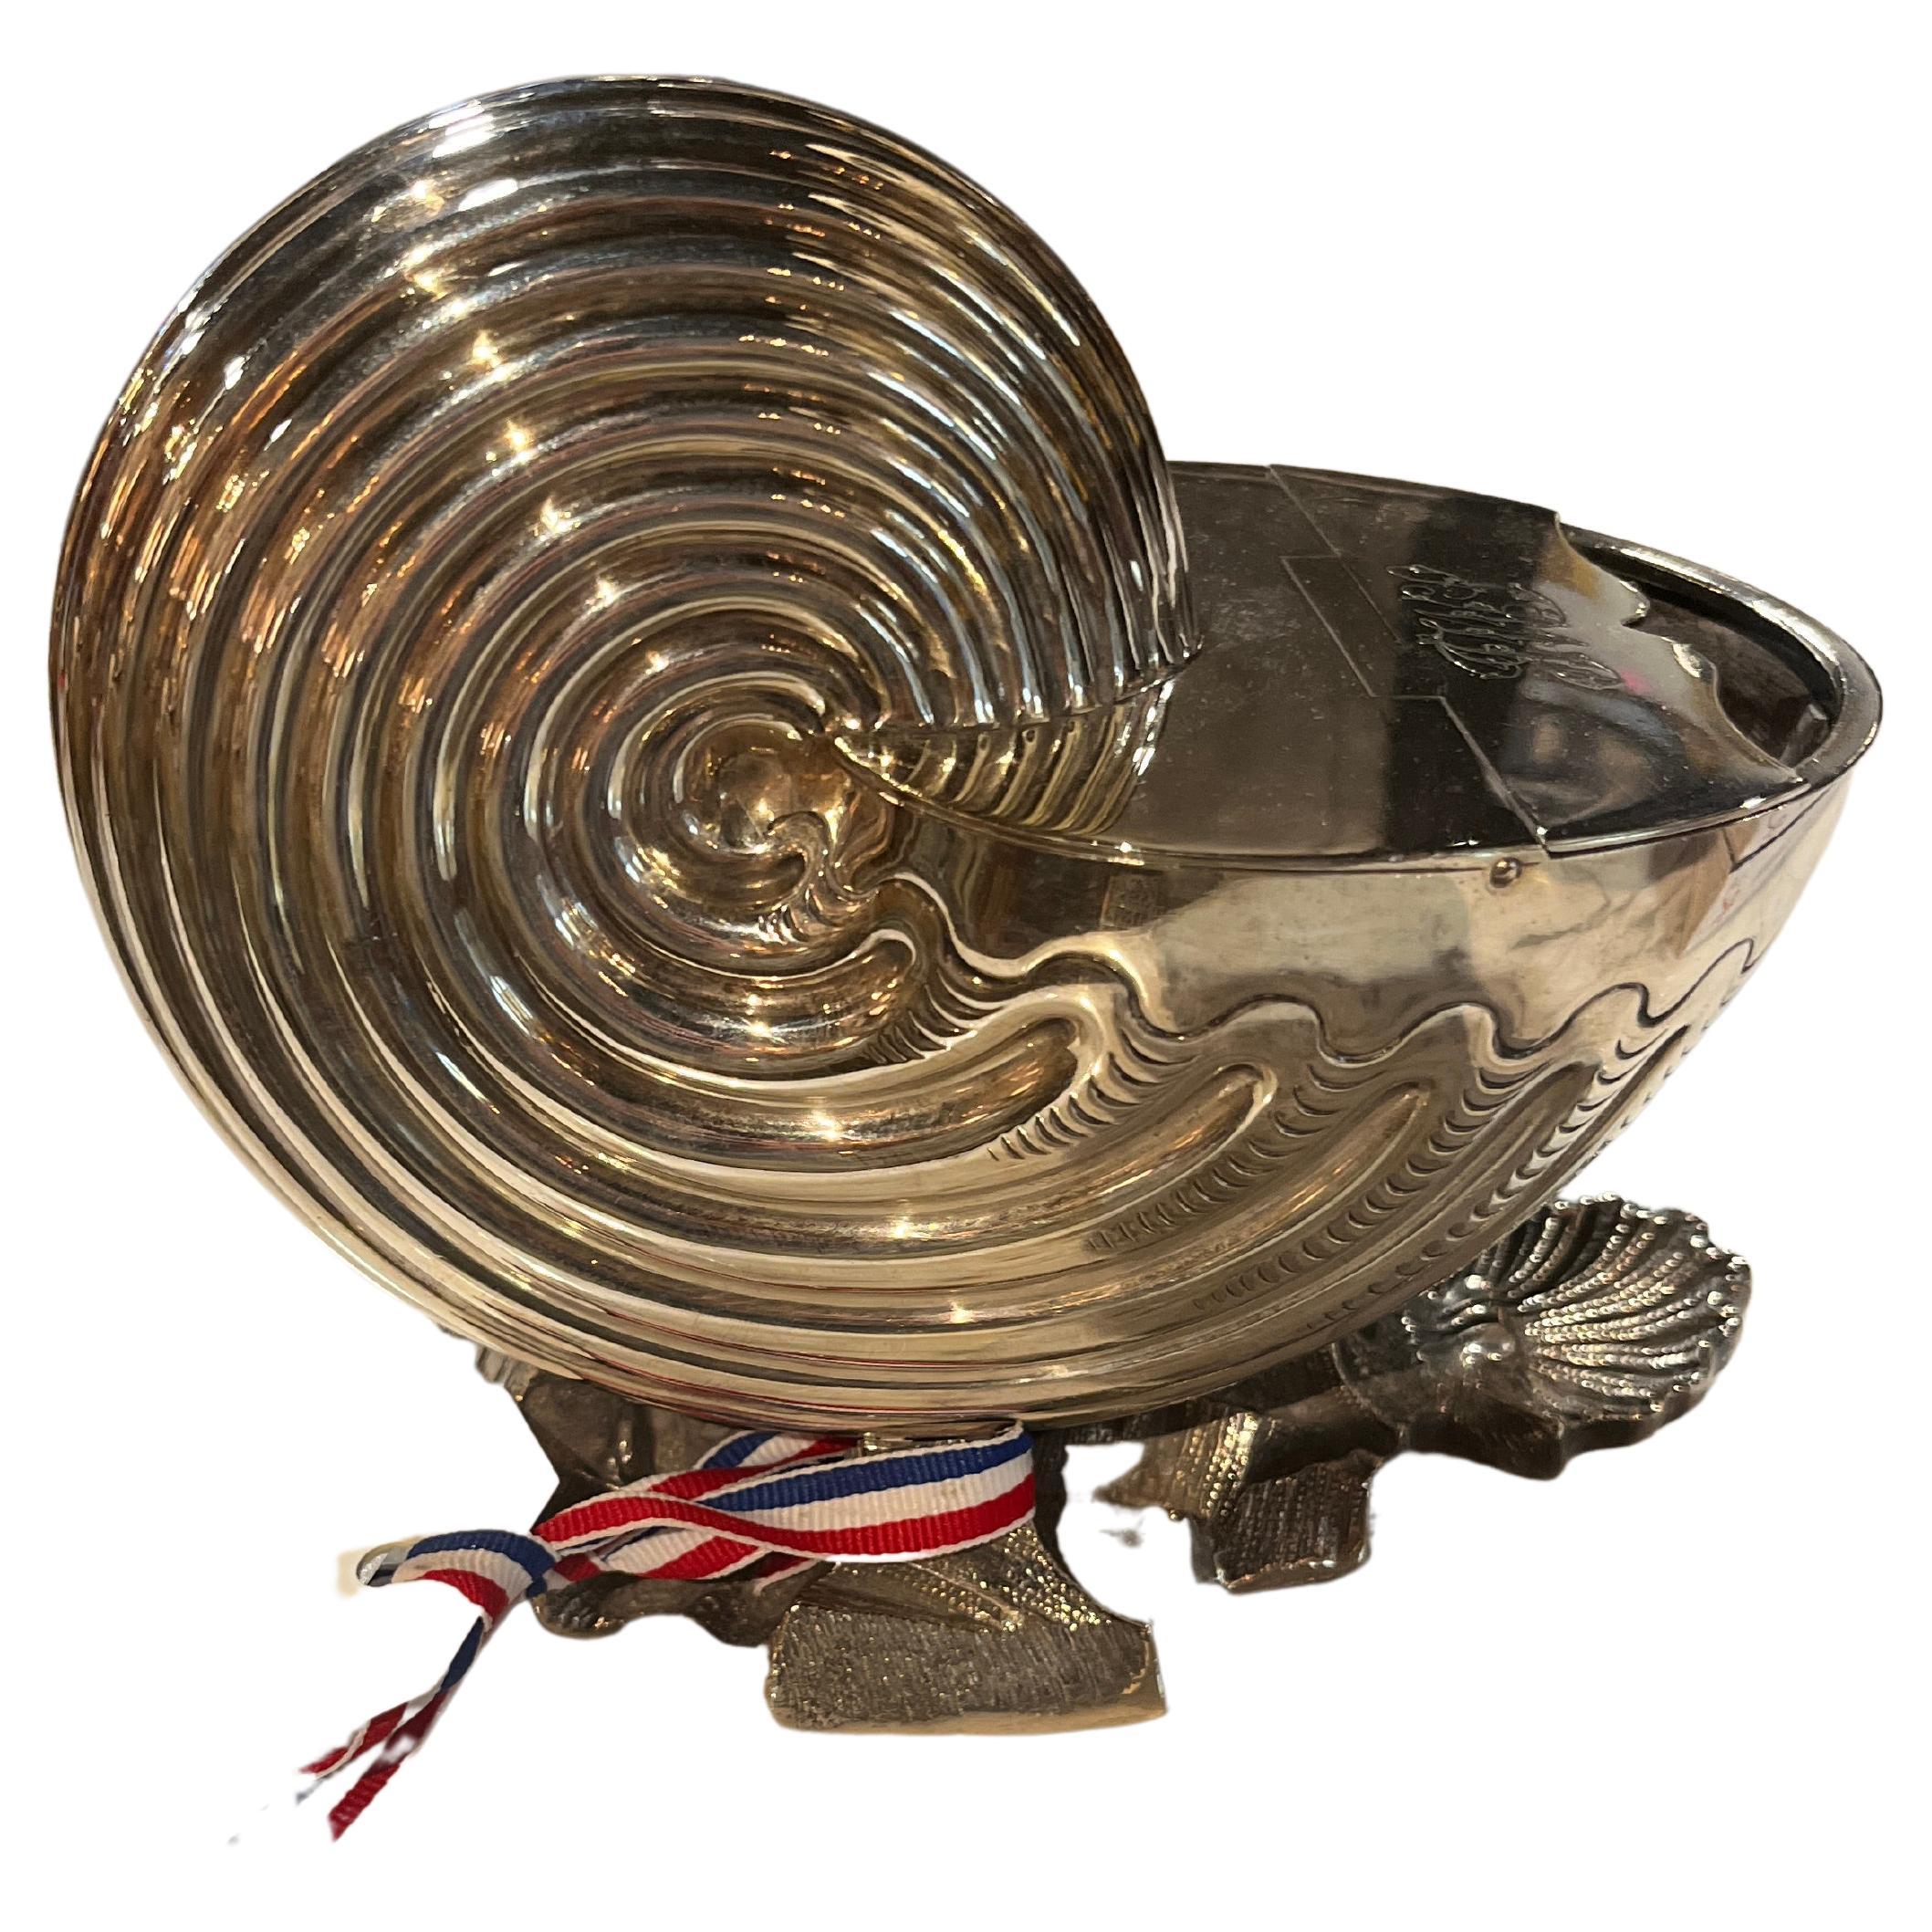 Chauffe-cuillère en métal argenté français du 19e siècle